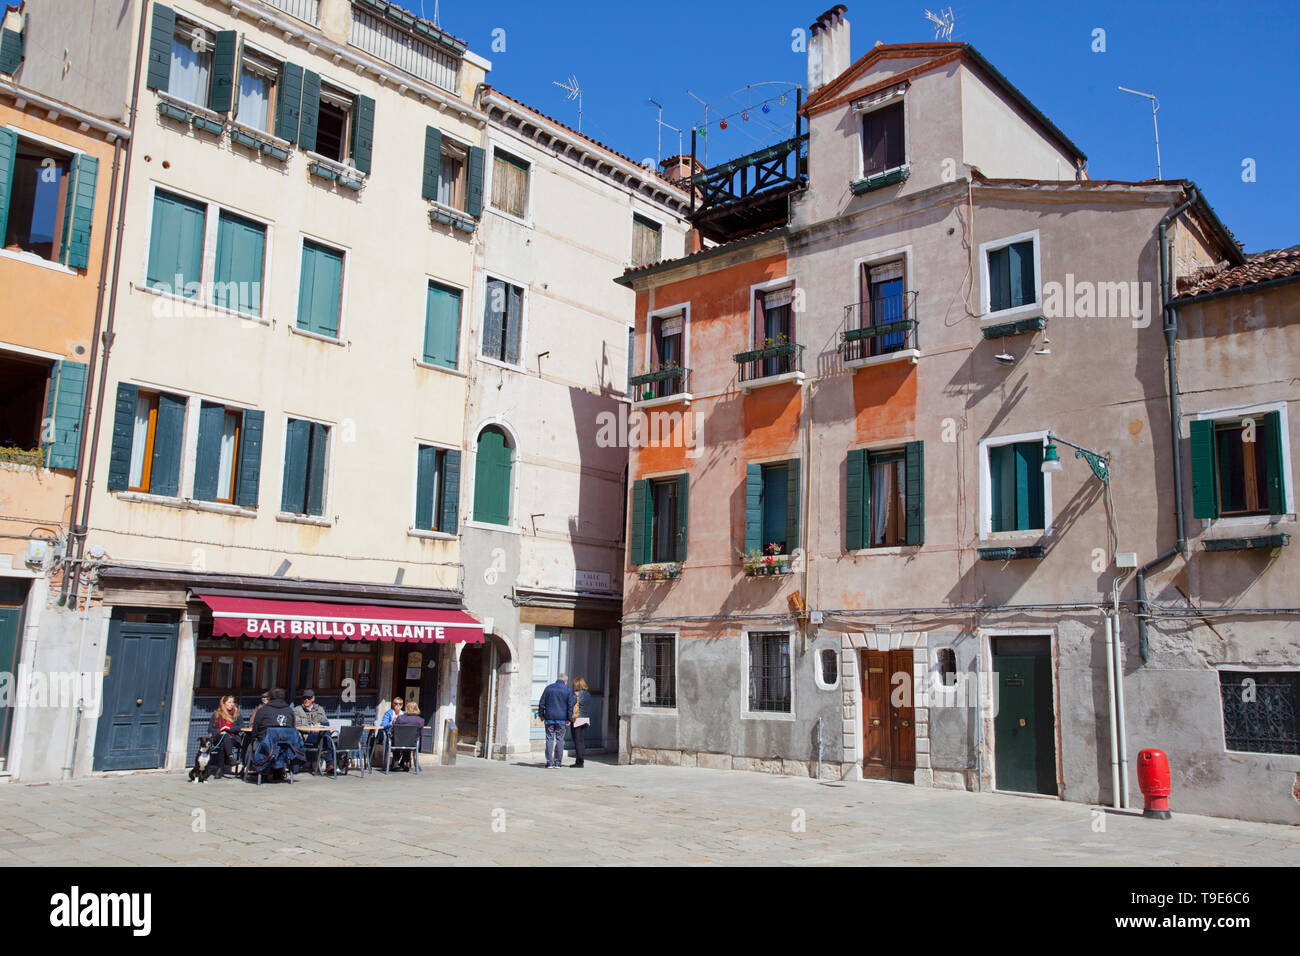 Venezianische Architektur und Bar Brillo Parlante Stockfoto